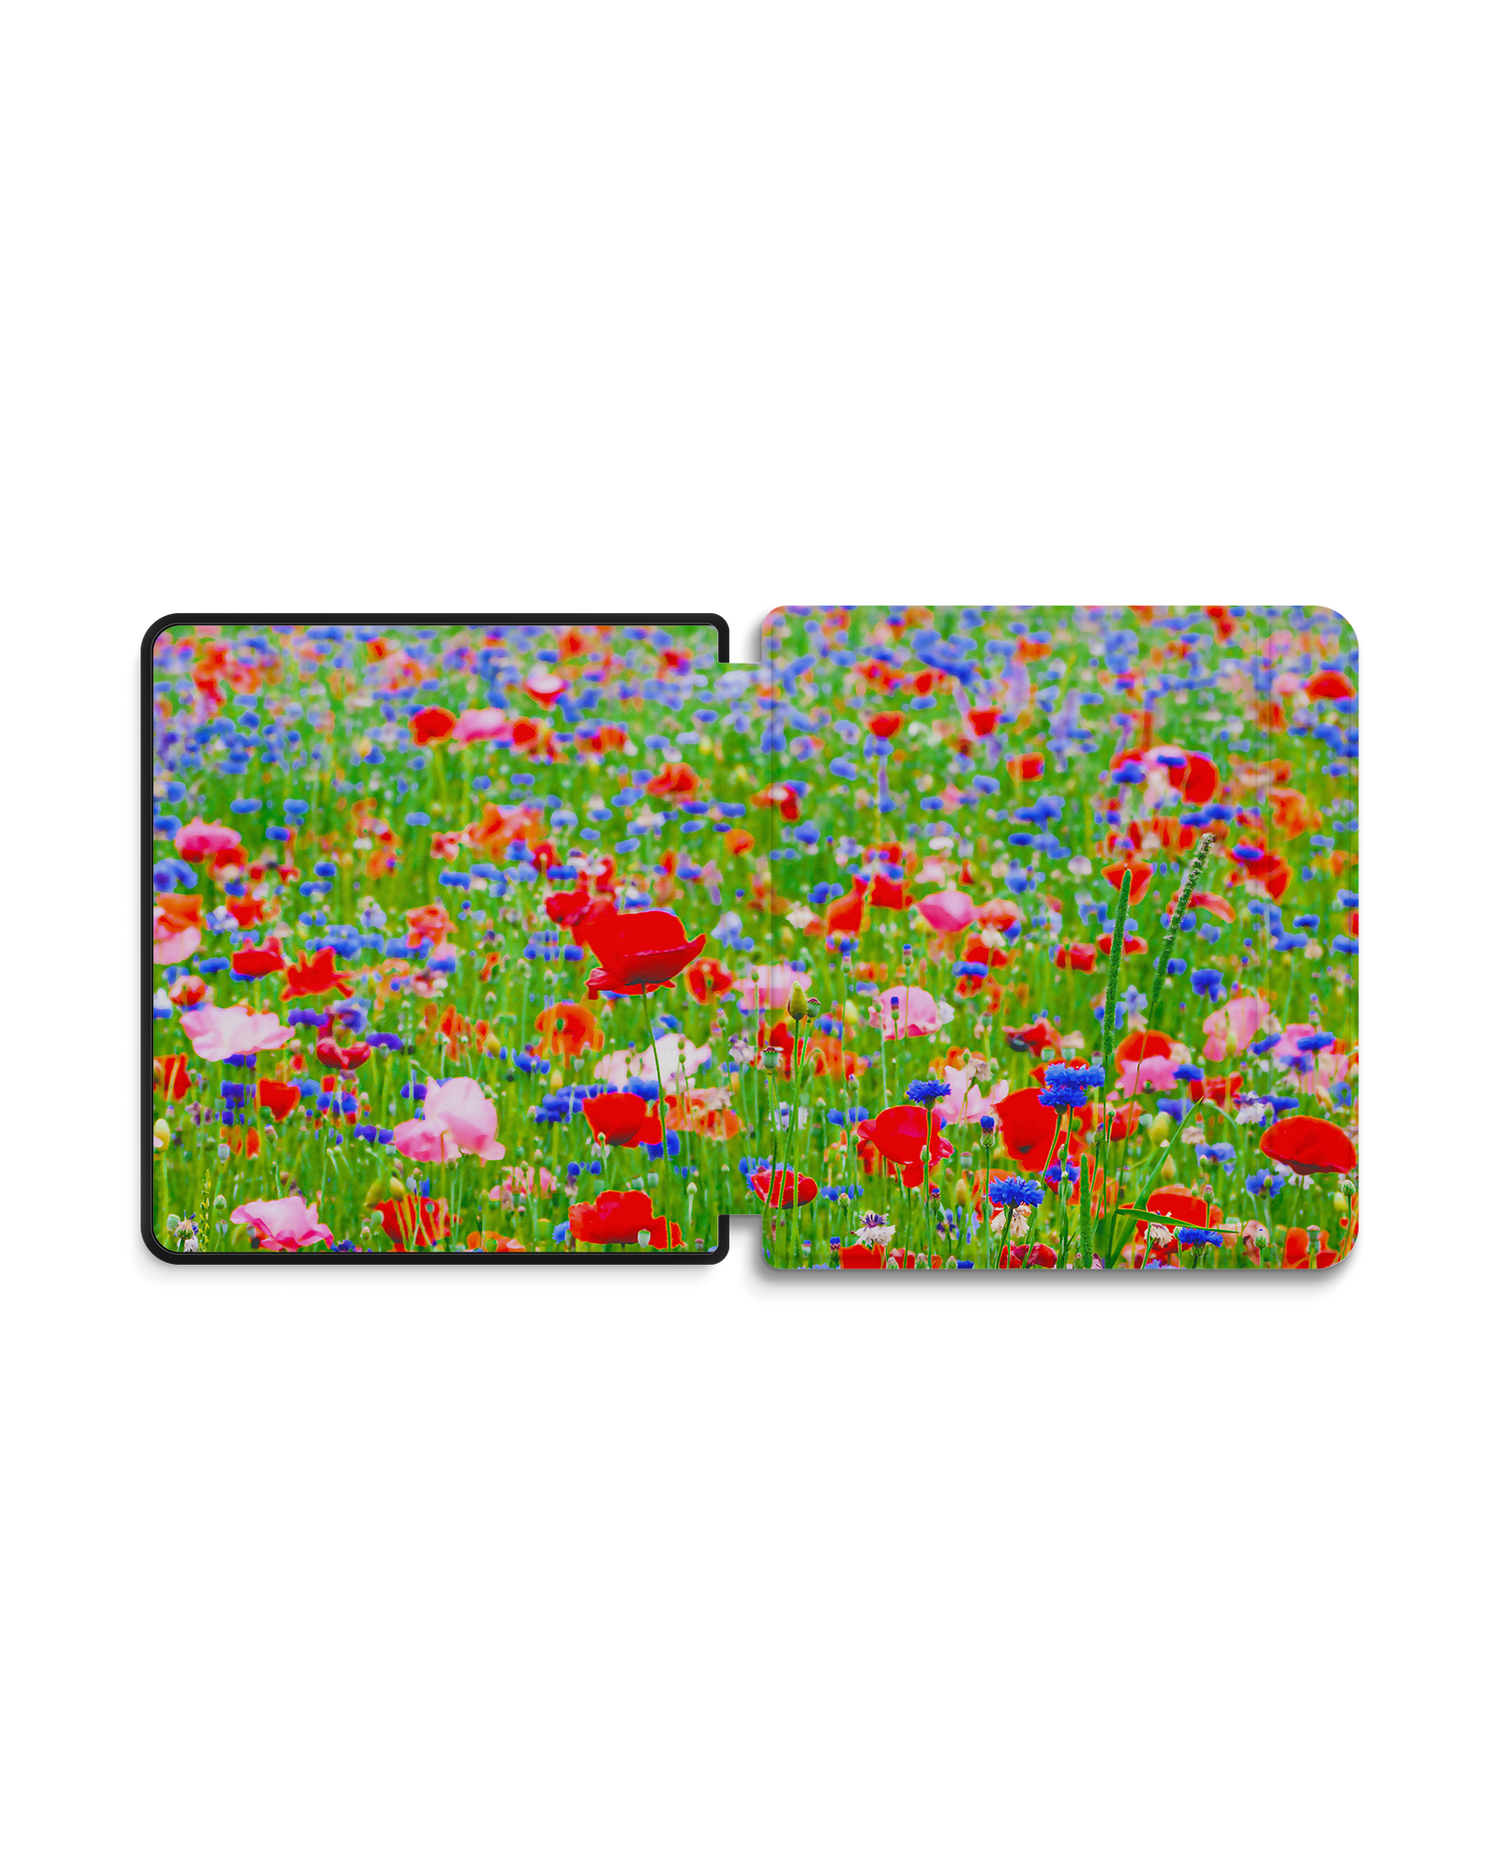 Flower Field eBook Reader Smart Case für tolino epos 2: Geöffnet Außenansicht